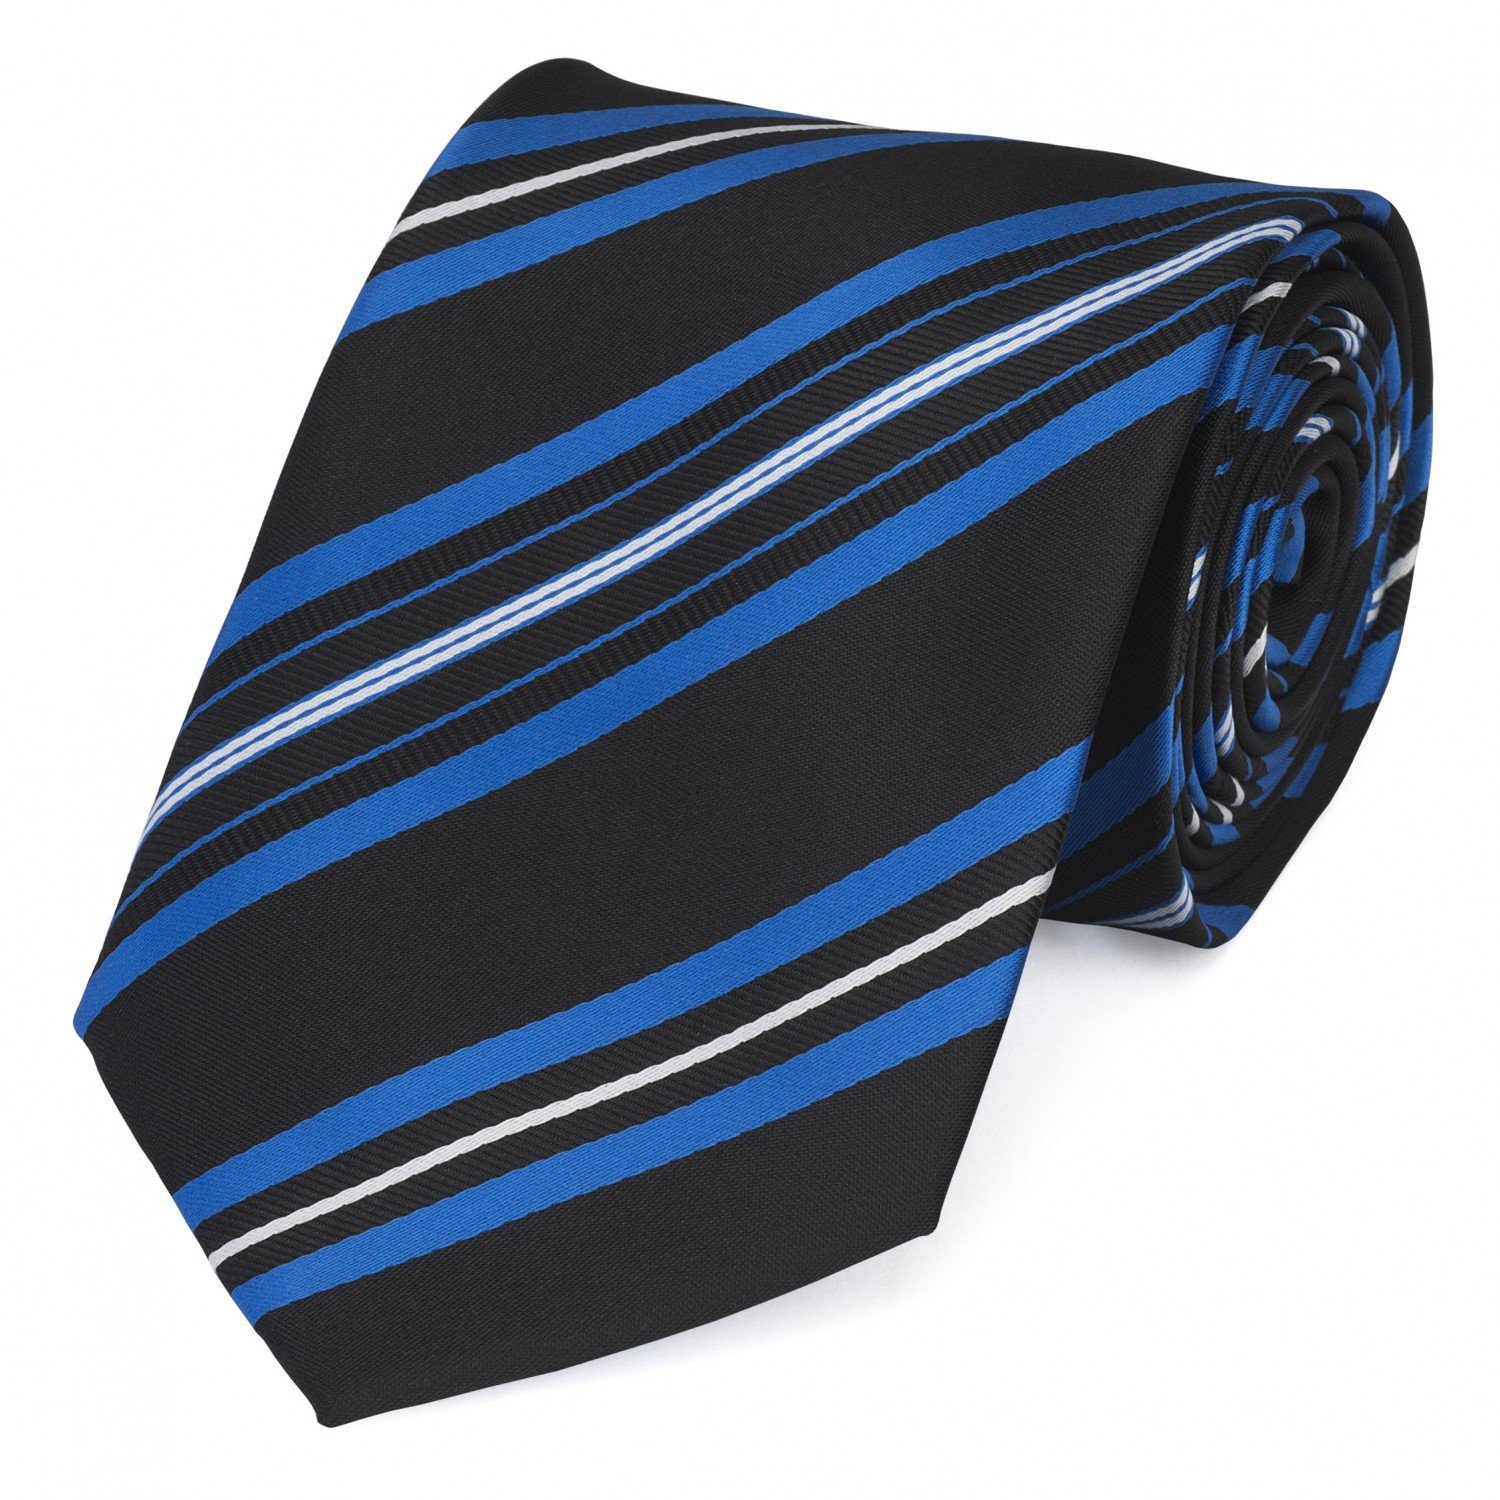 Fabio Farini Krawatte gestreifte Herren Krawatte - Tie mit Streifen in 6cm oder 8cm Breite (ohne Box, Gestreift) Breit (8cm), Royalblau/Blau/Weiß